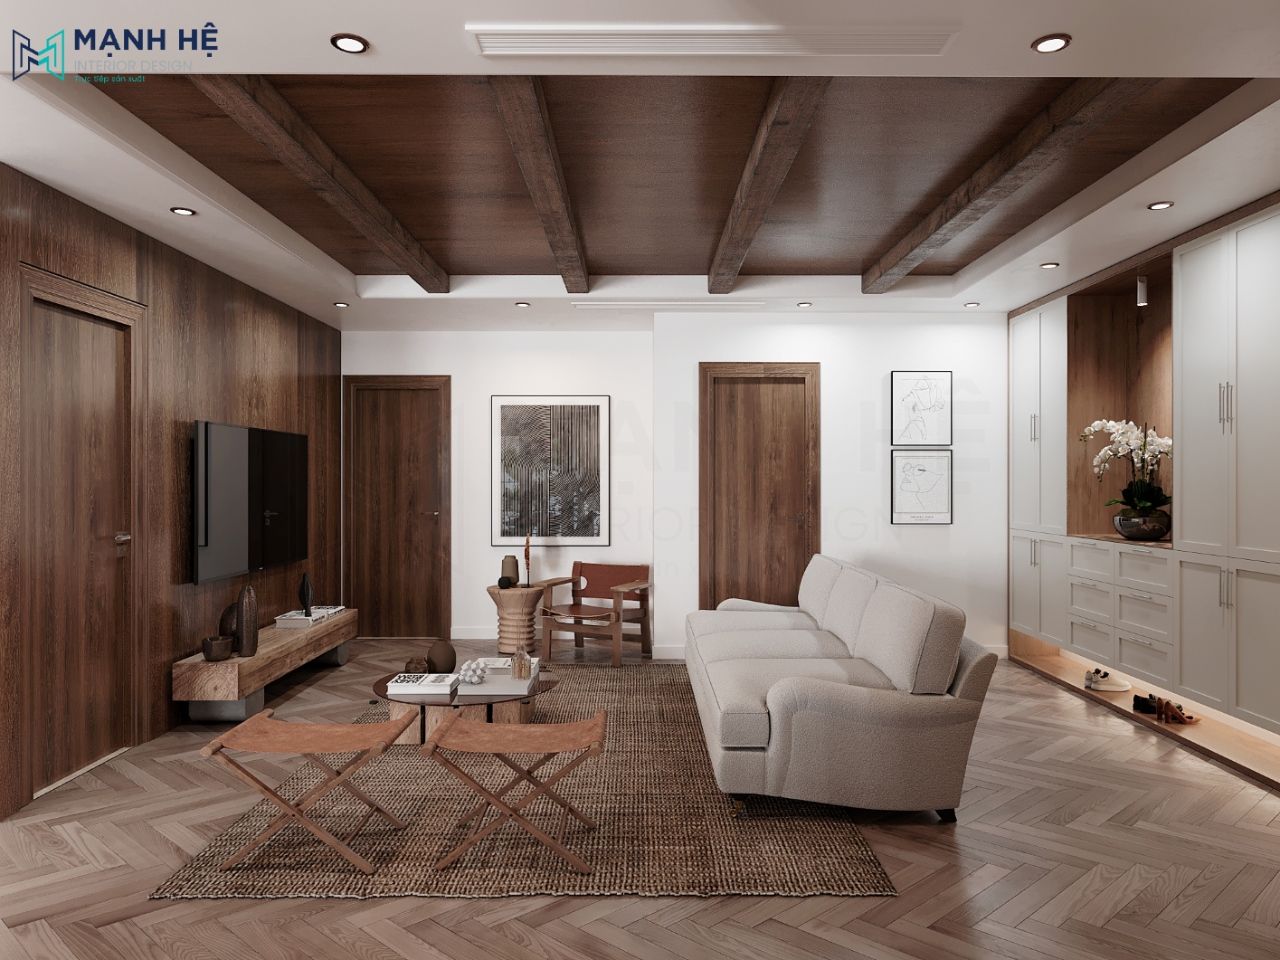 Nội thất phòng khách thiết kế đơn giản nhưng hiện đại với tone màu gỗ trầm